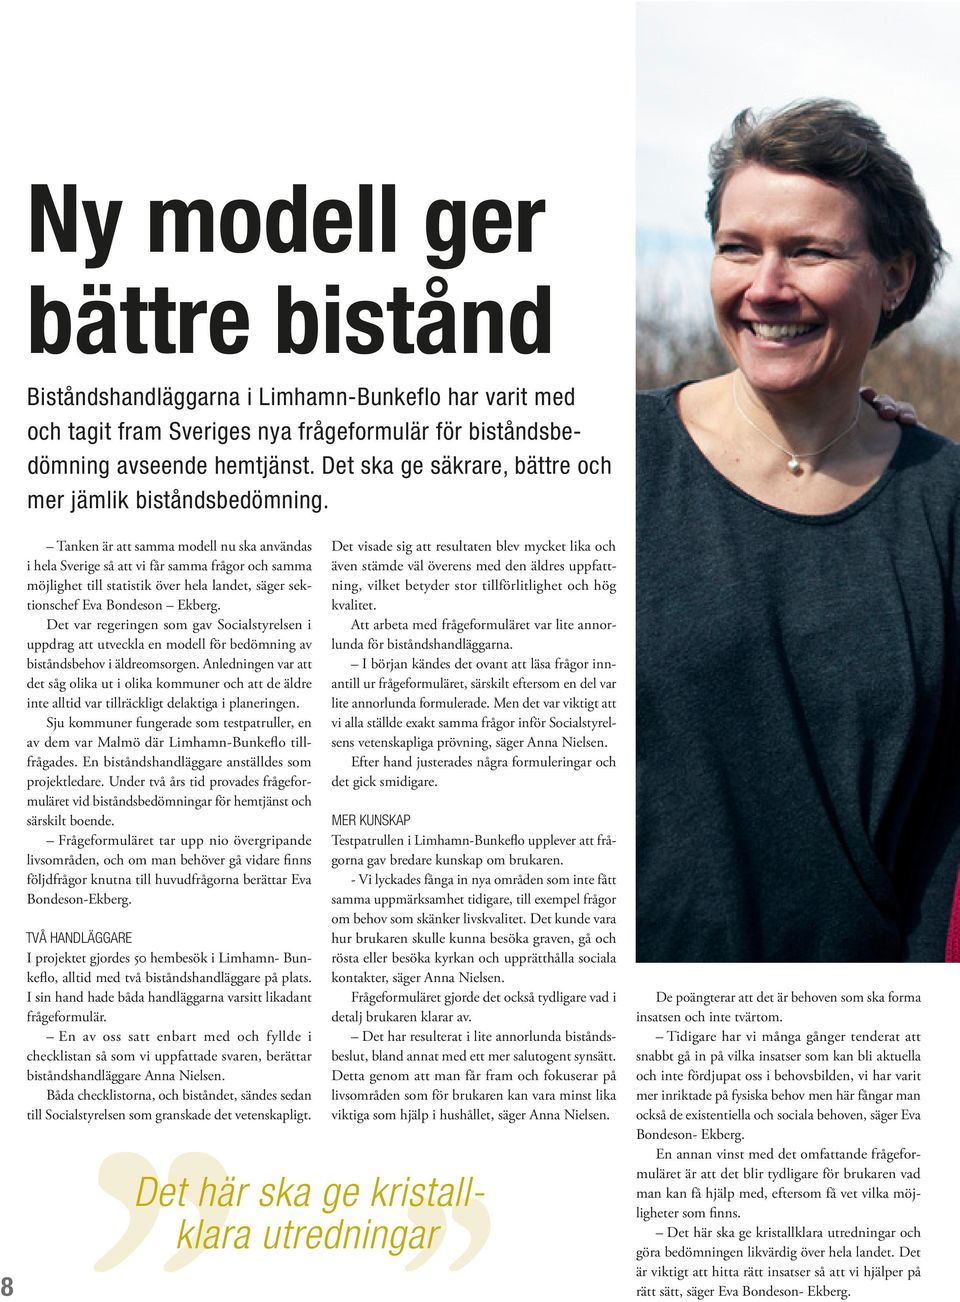 Tanken är att samma modell nu ska användas i hela Sverige så att vi får samma frågor och samma möjlighet till statistik över hela landet, säger sektionschef Eva Bondeson Ekberg.